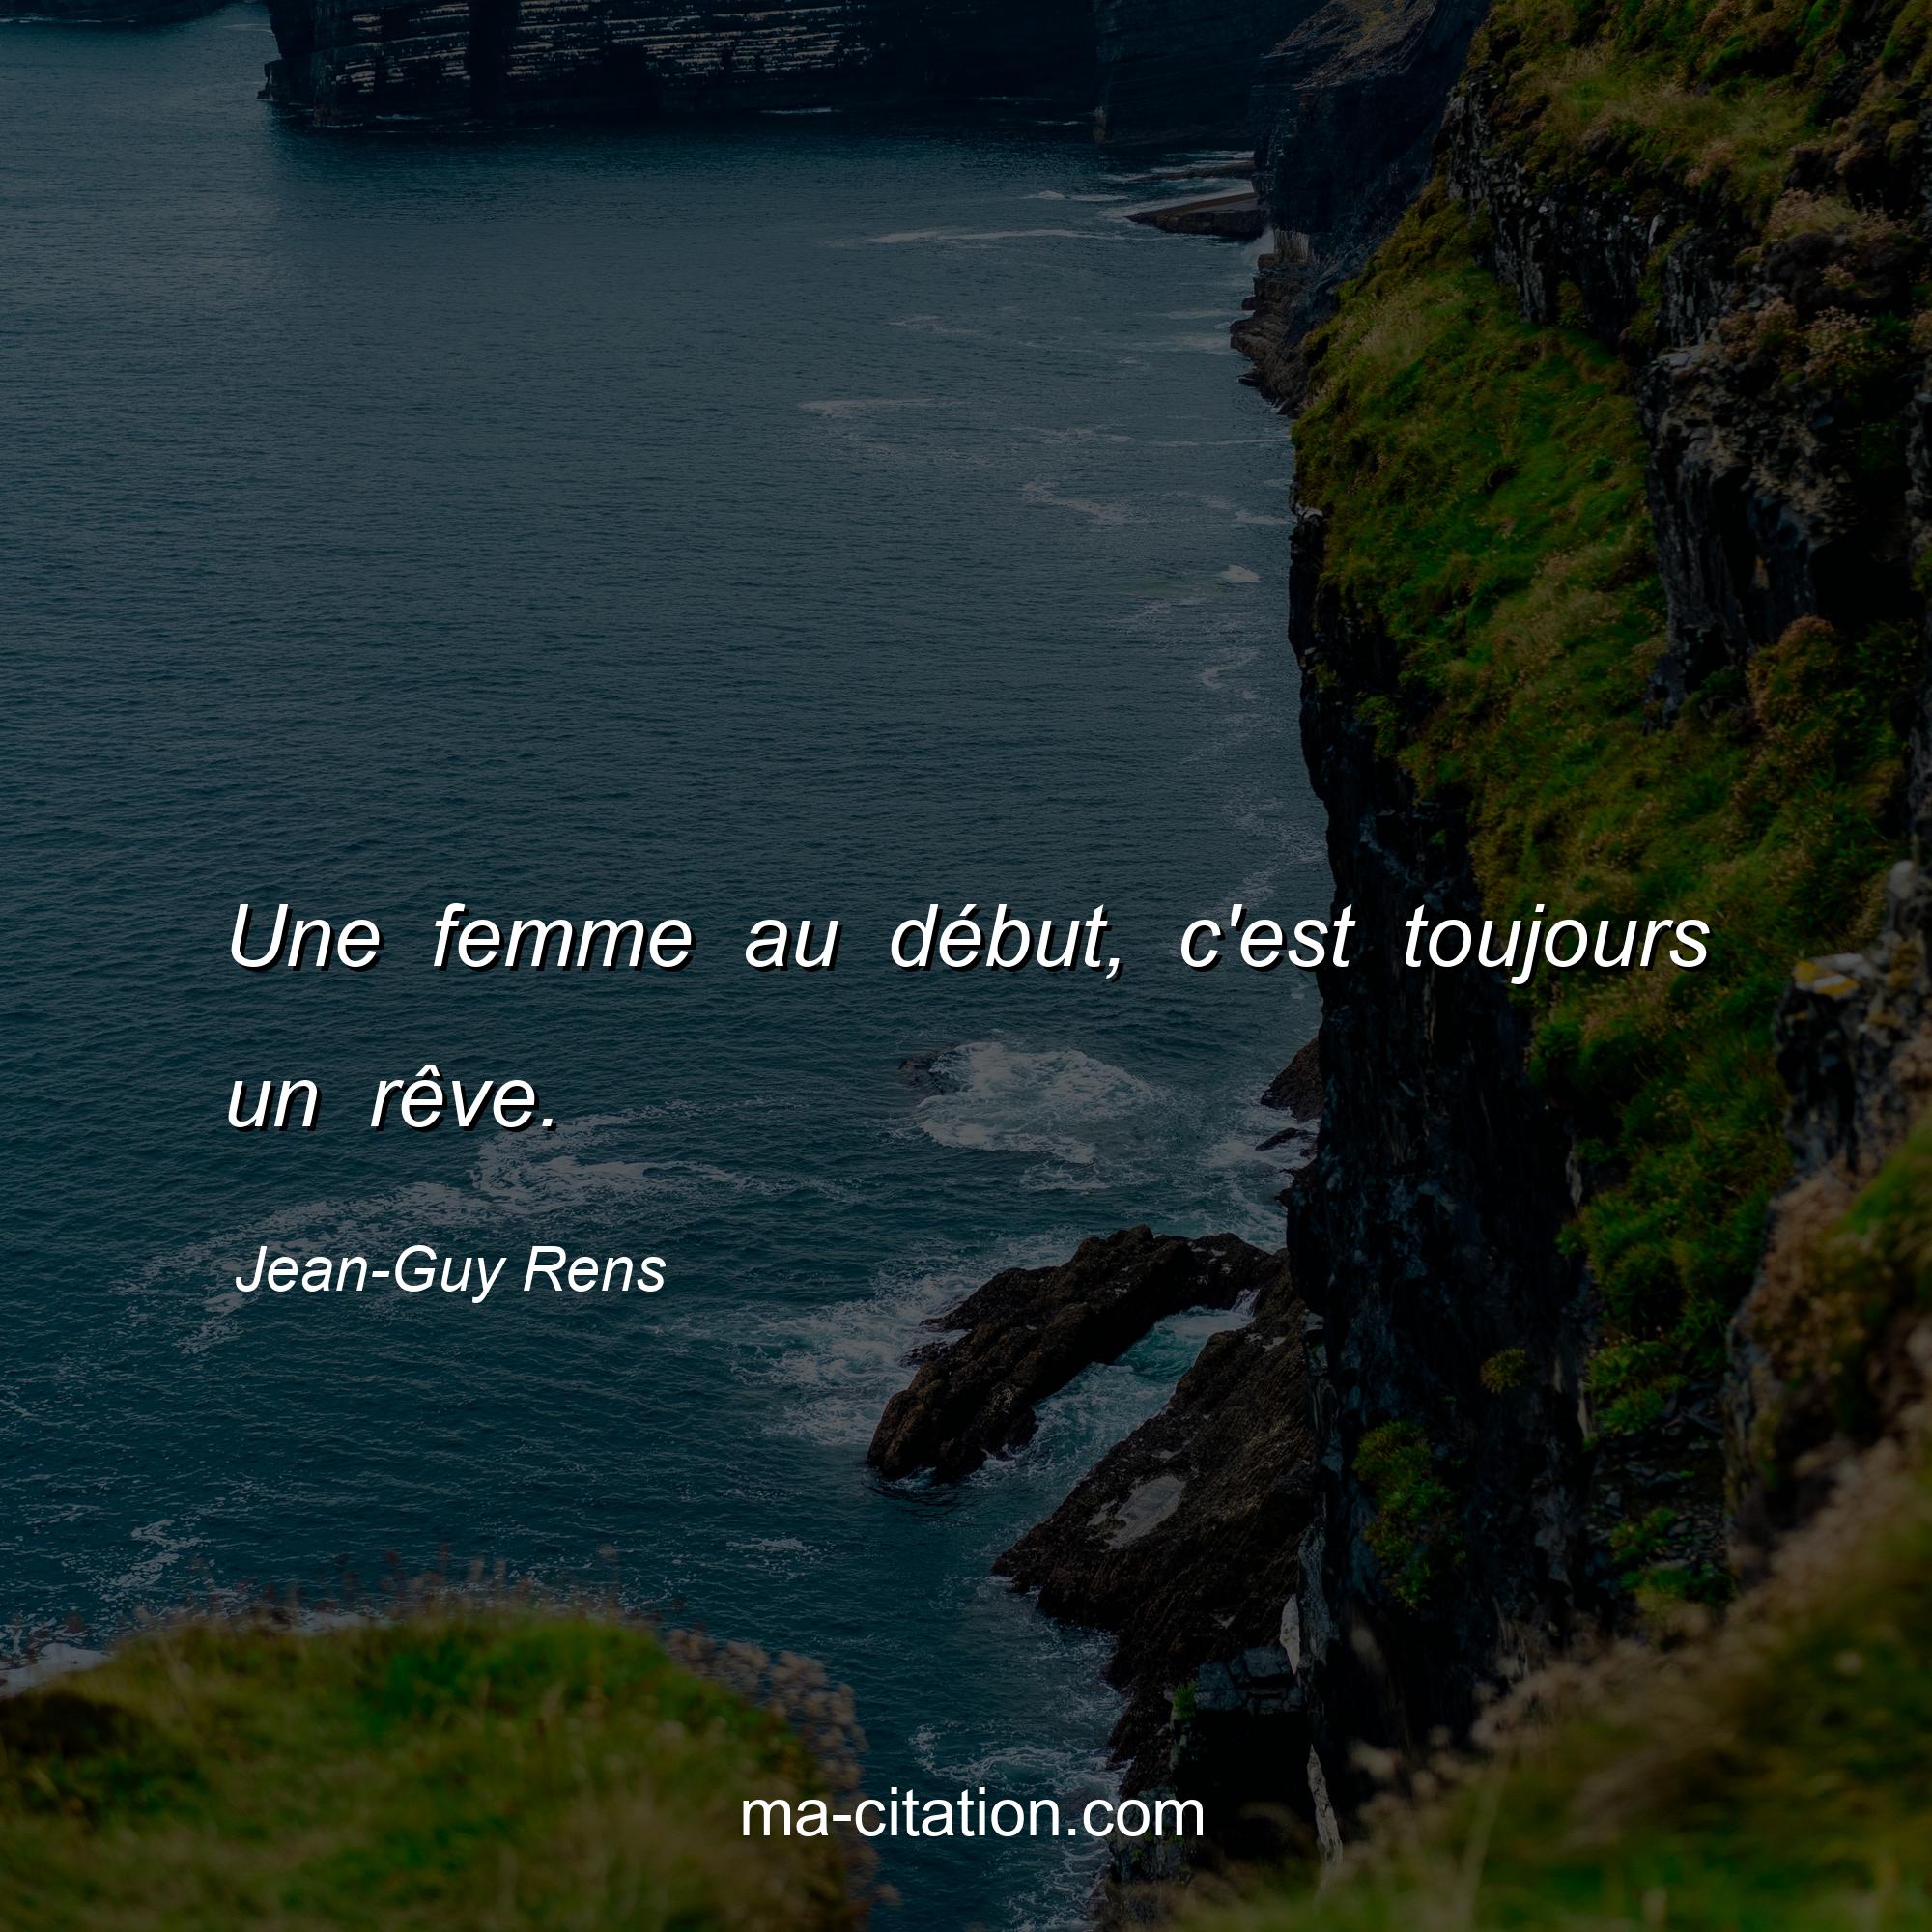 Jean-Guy Rens : Une femme au début, c'est toujours un rêve.